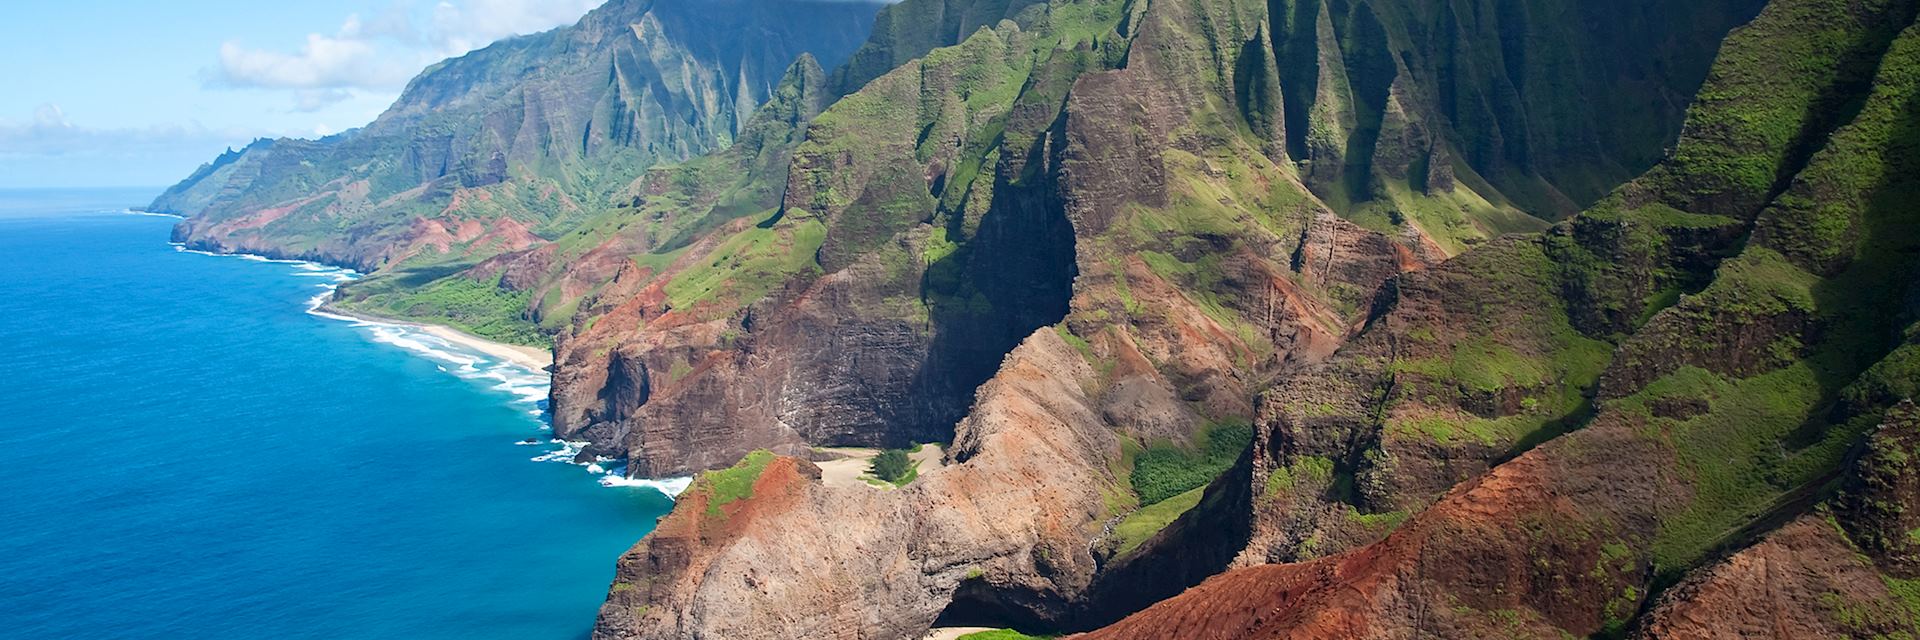 Nā Pali Cliffs, Kauaʻi